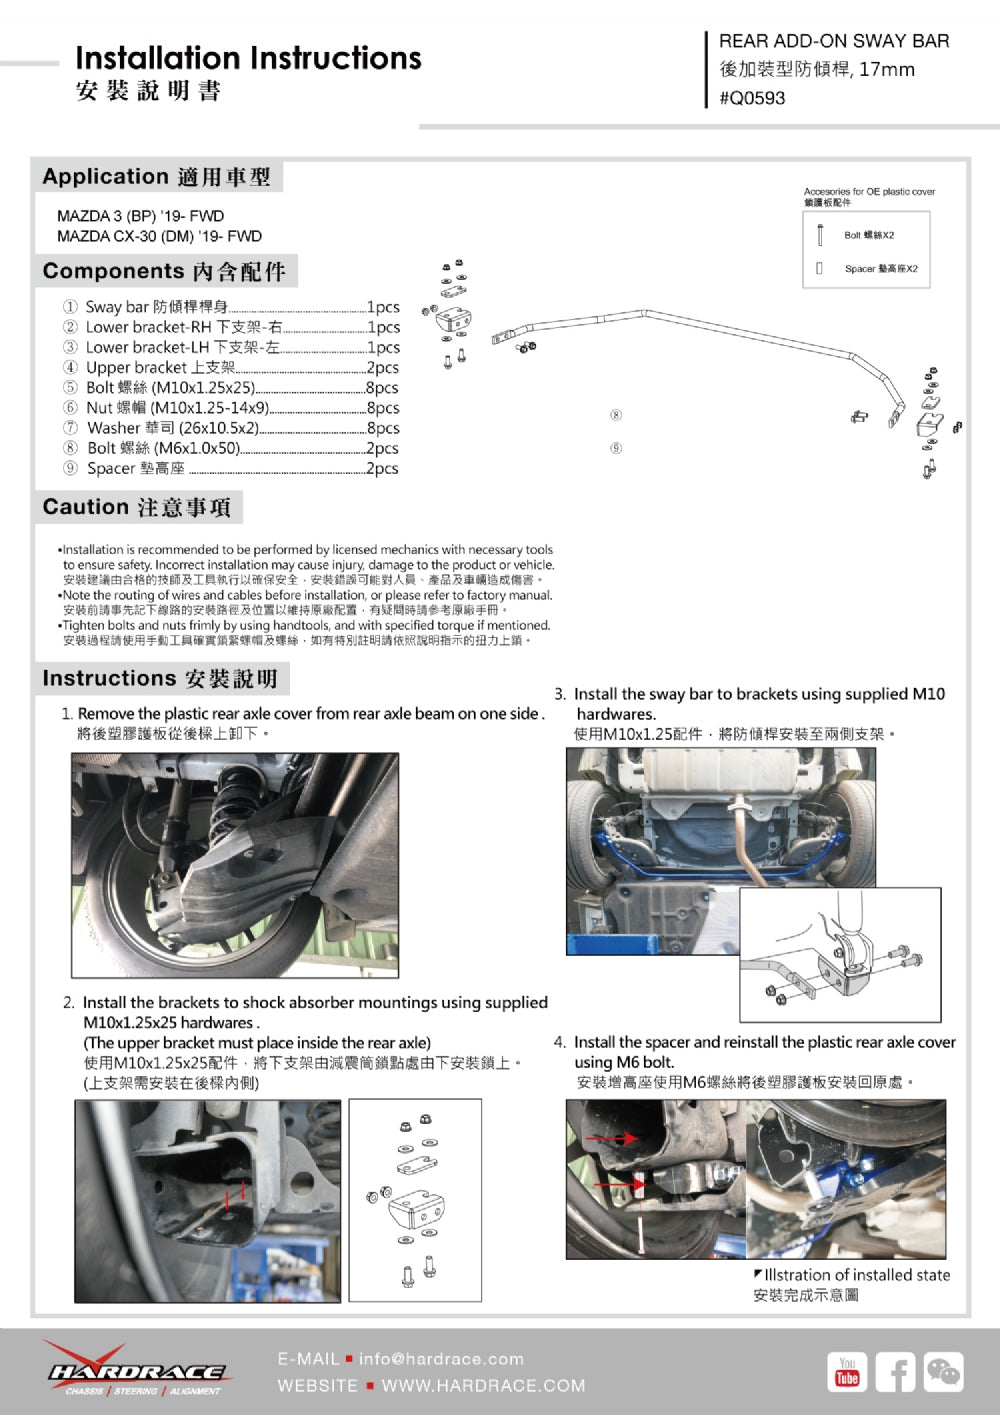 Rear Add-On Sway Bar 17mm - 5pc set Mazda 3 BP '19-